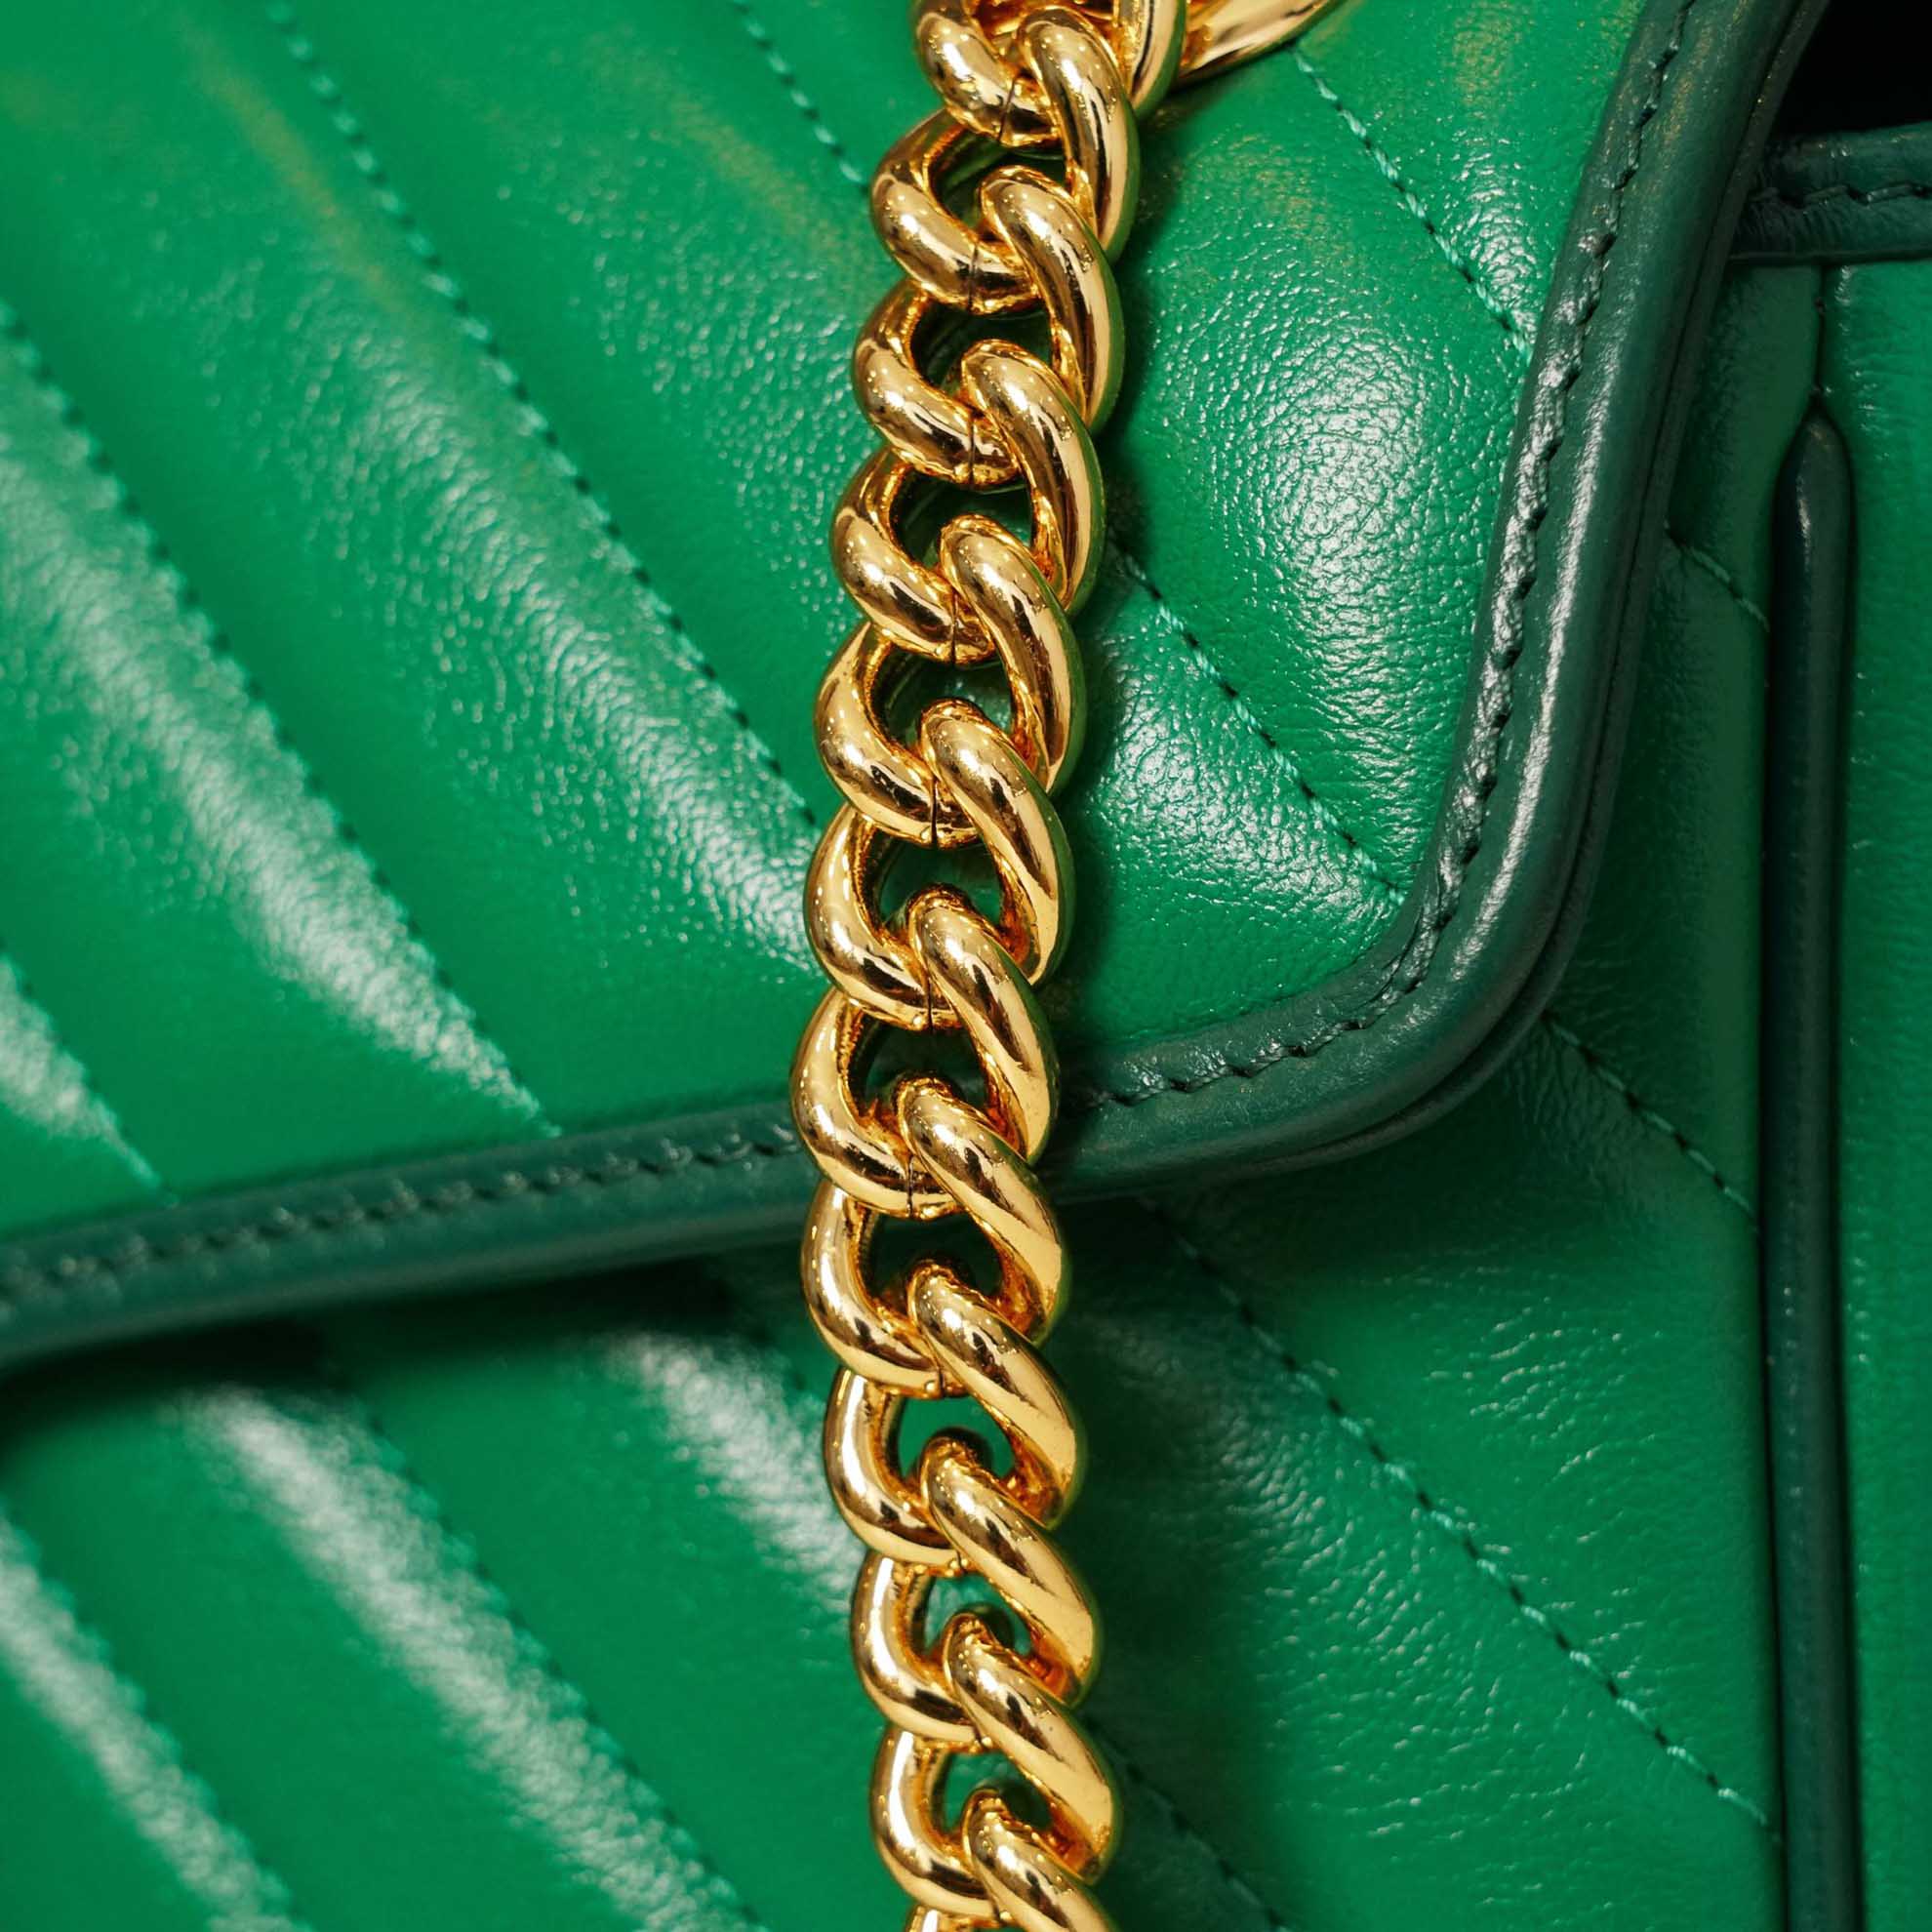 Túi Gucci GG Marmont small shoulder bag xanh lá